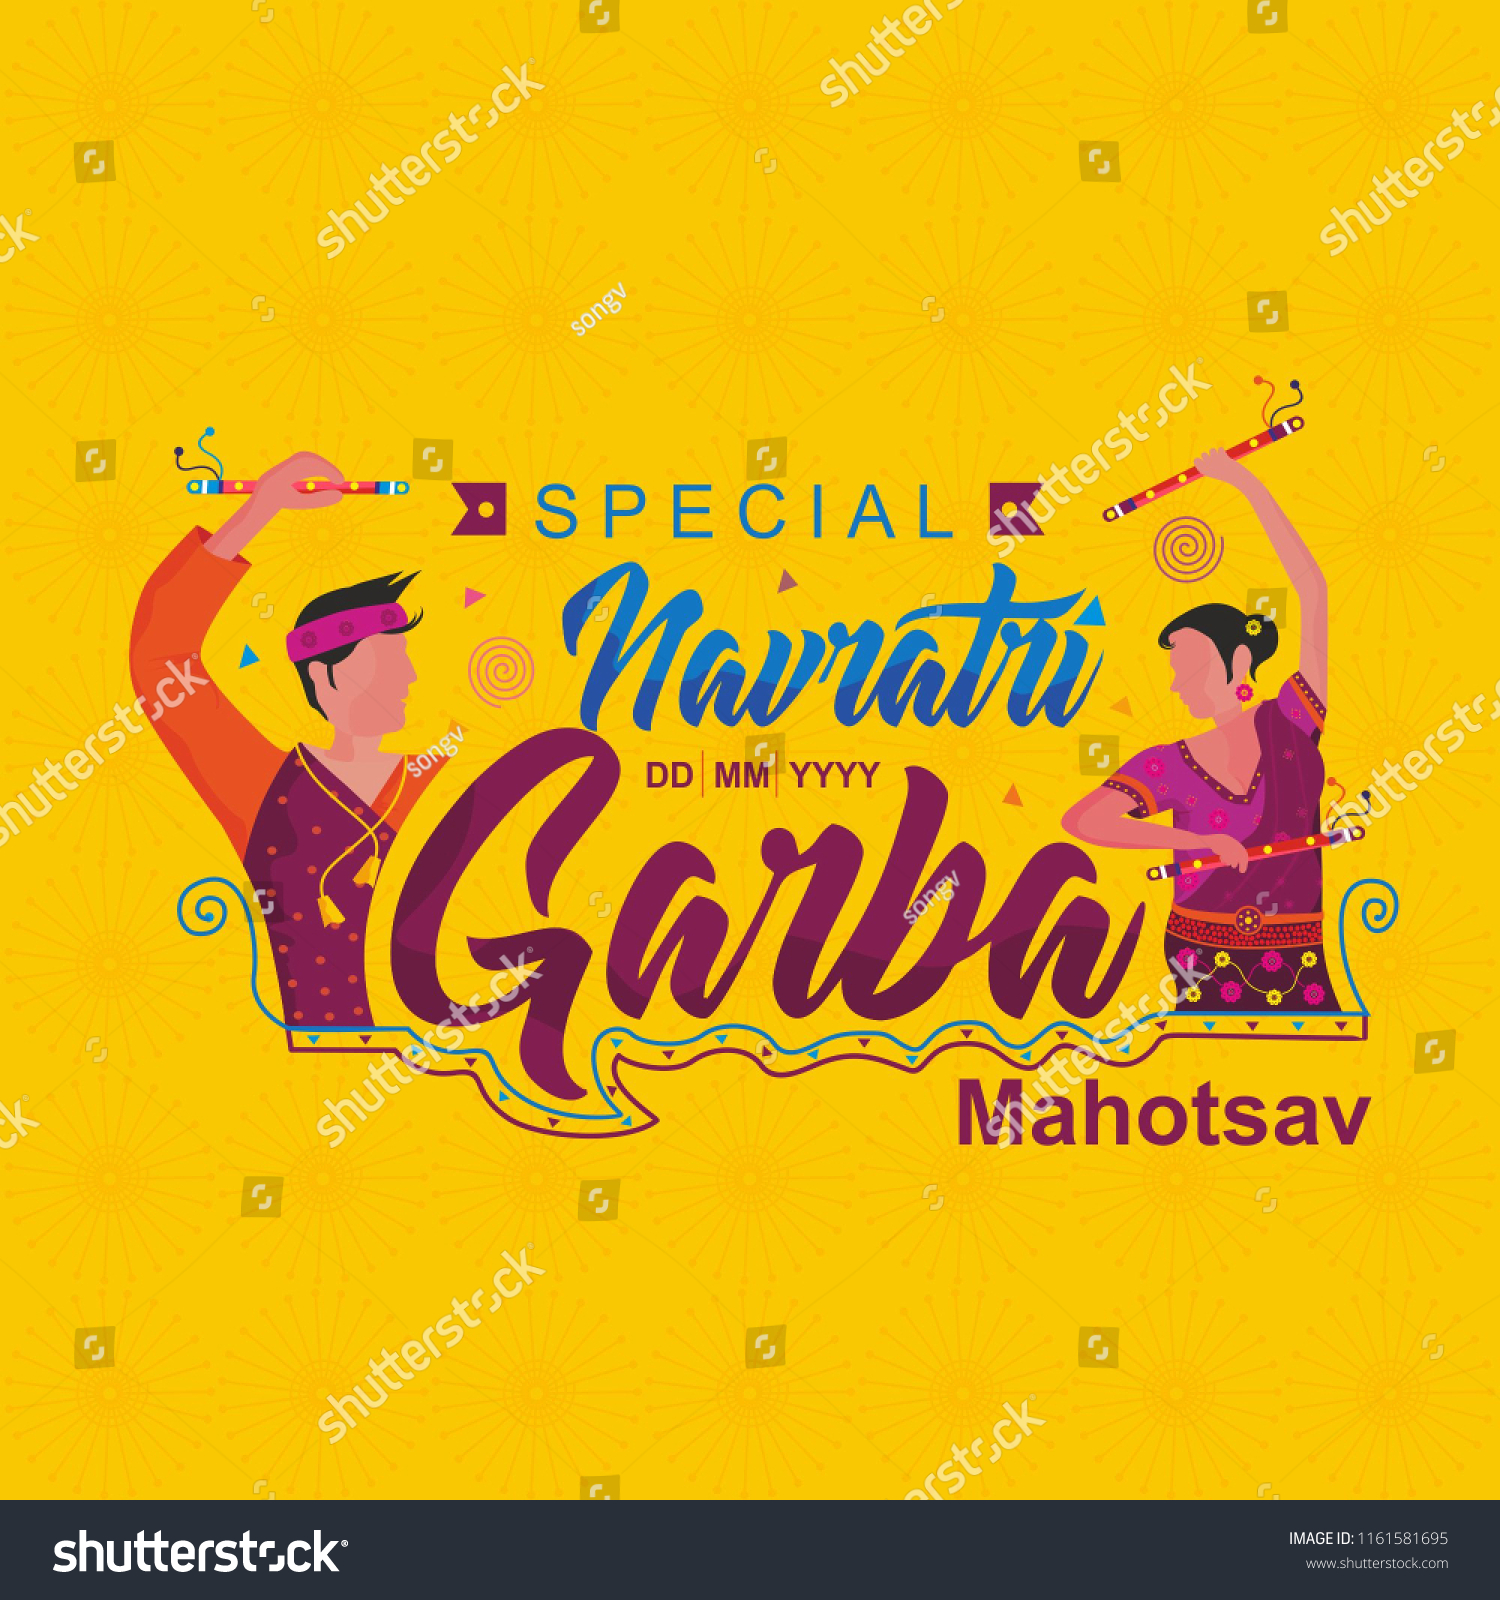 SVG of Navratri festival, Navratri Garba Dance, Navratri dandiya dance festival, Indian dandiya night, Couple playing Garba in Navratri svg